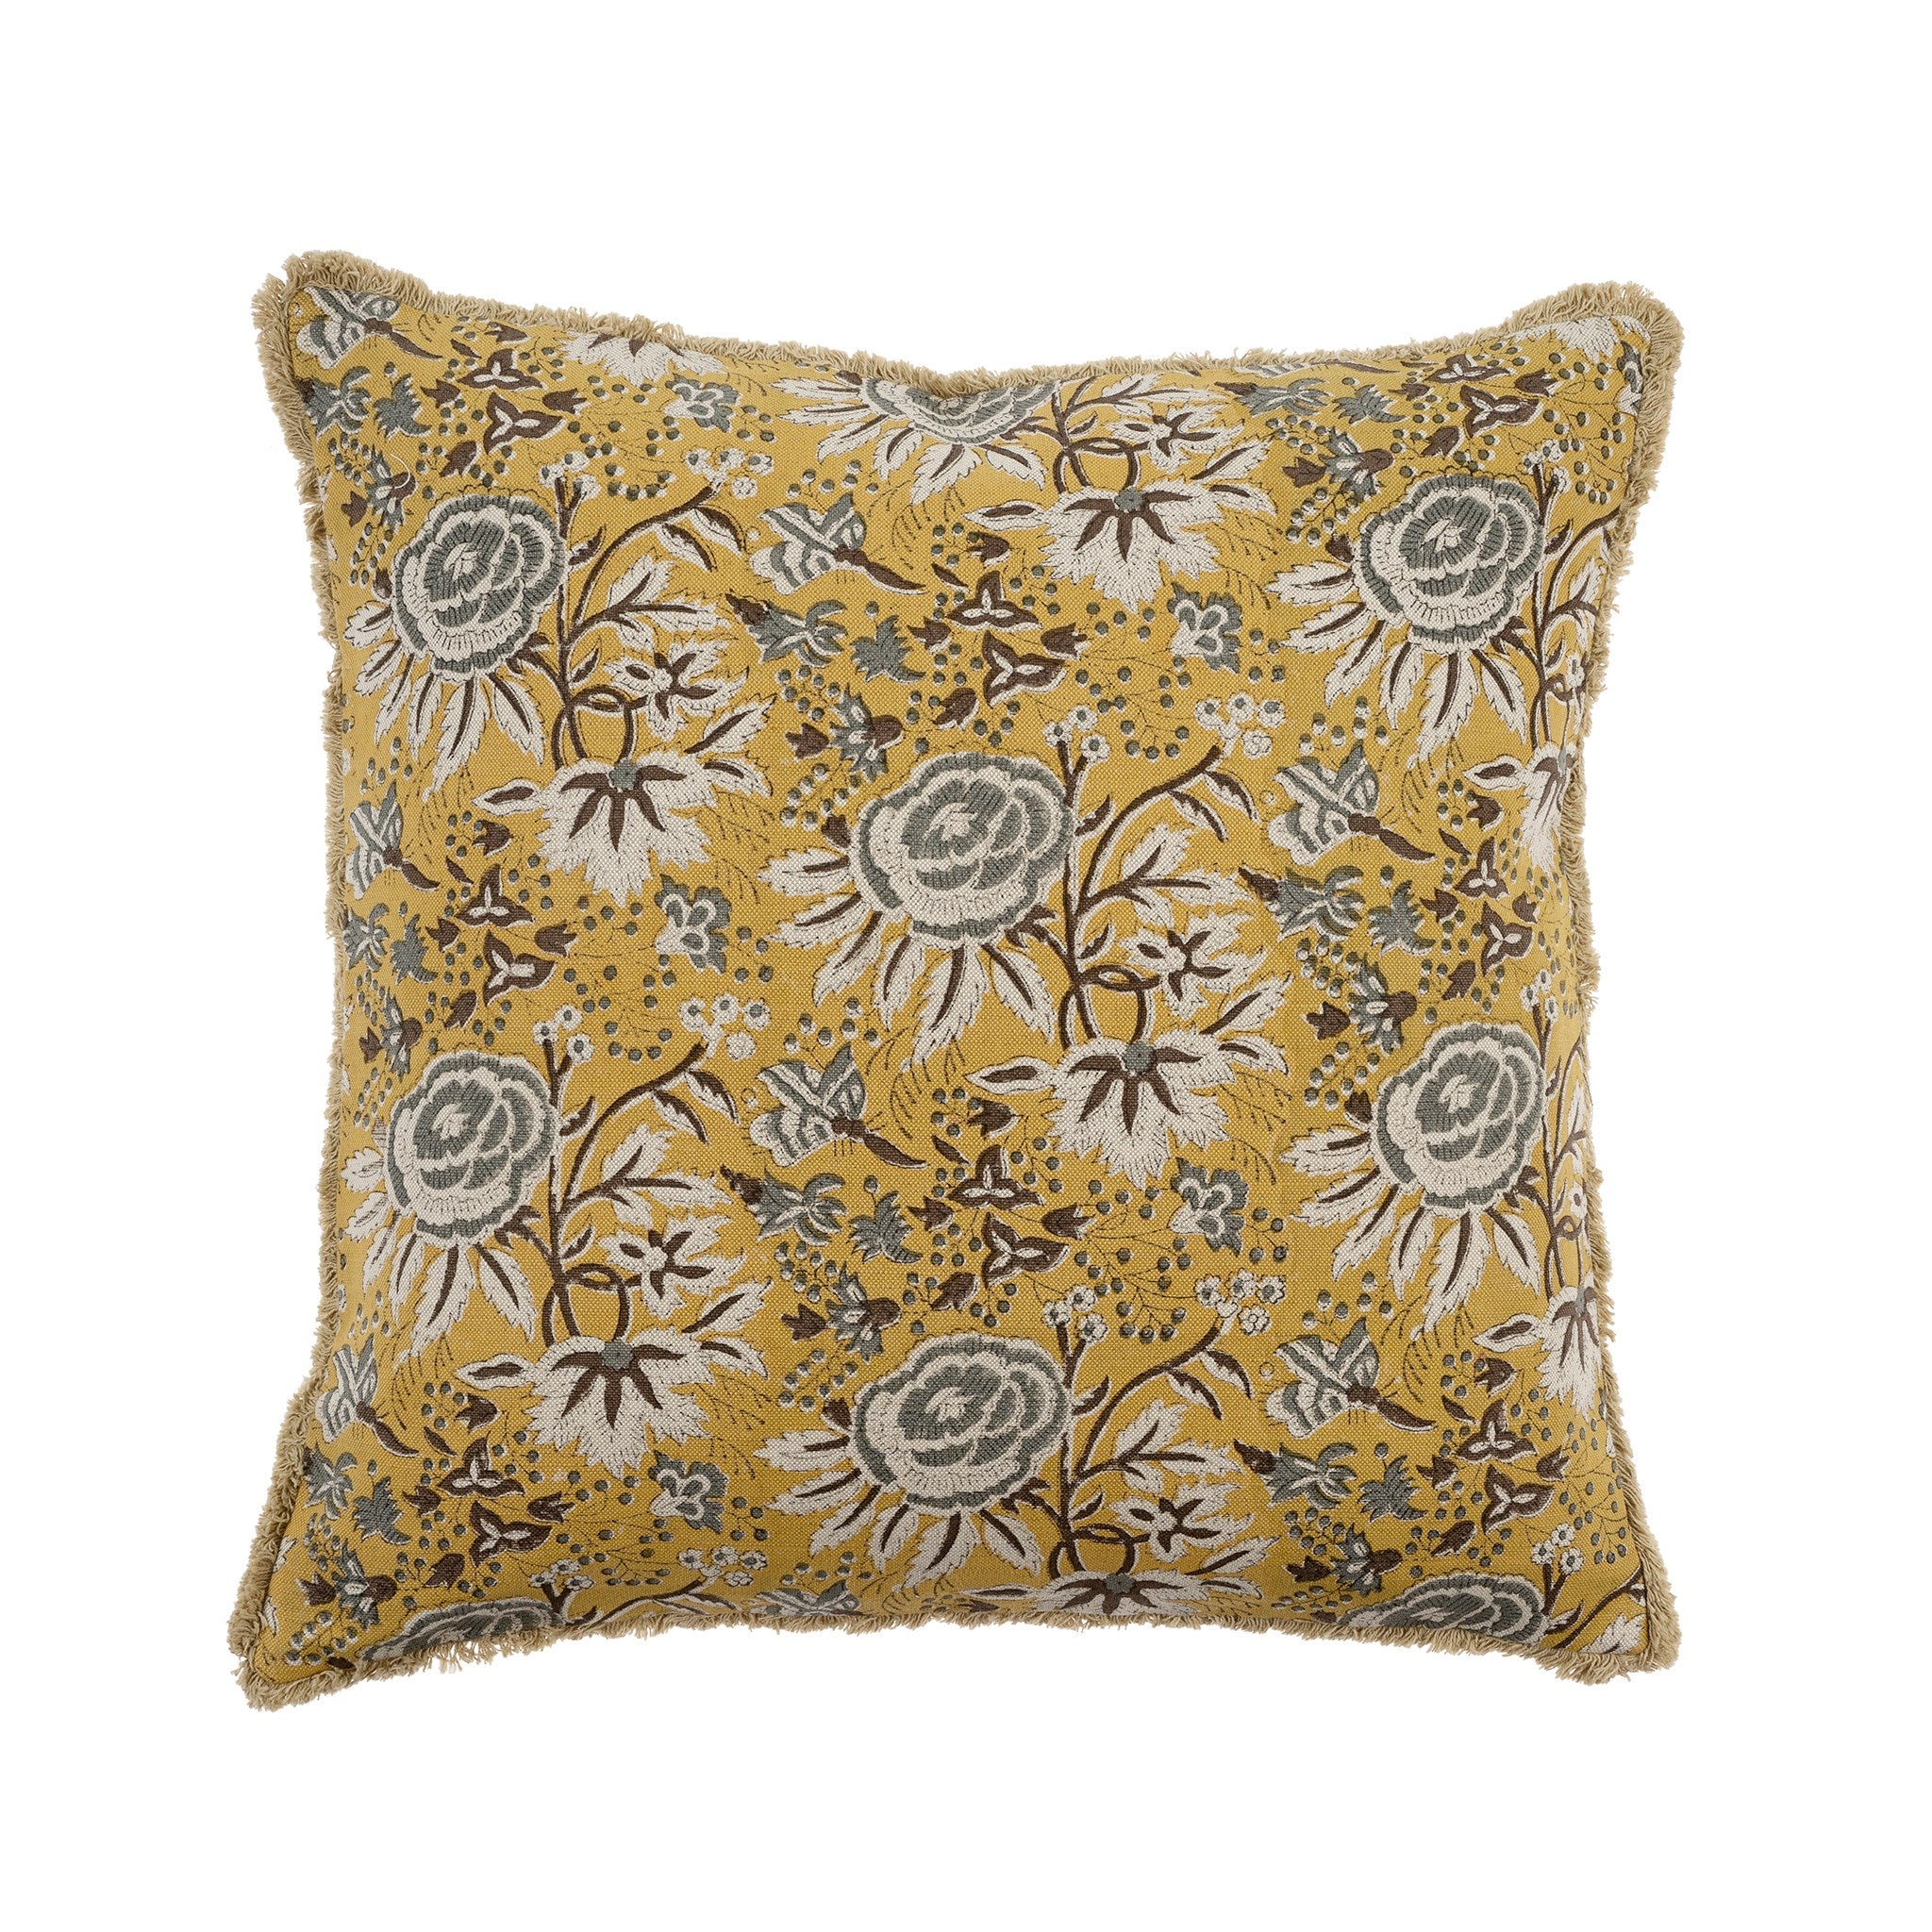 Marigold Linen  Pillow, 20" x 20"